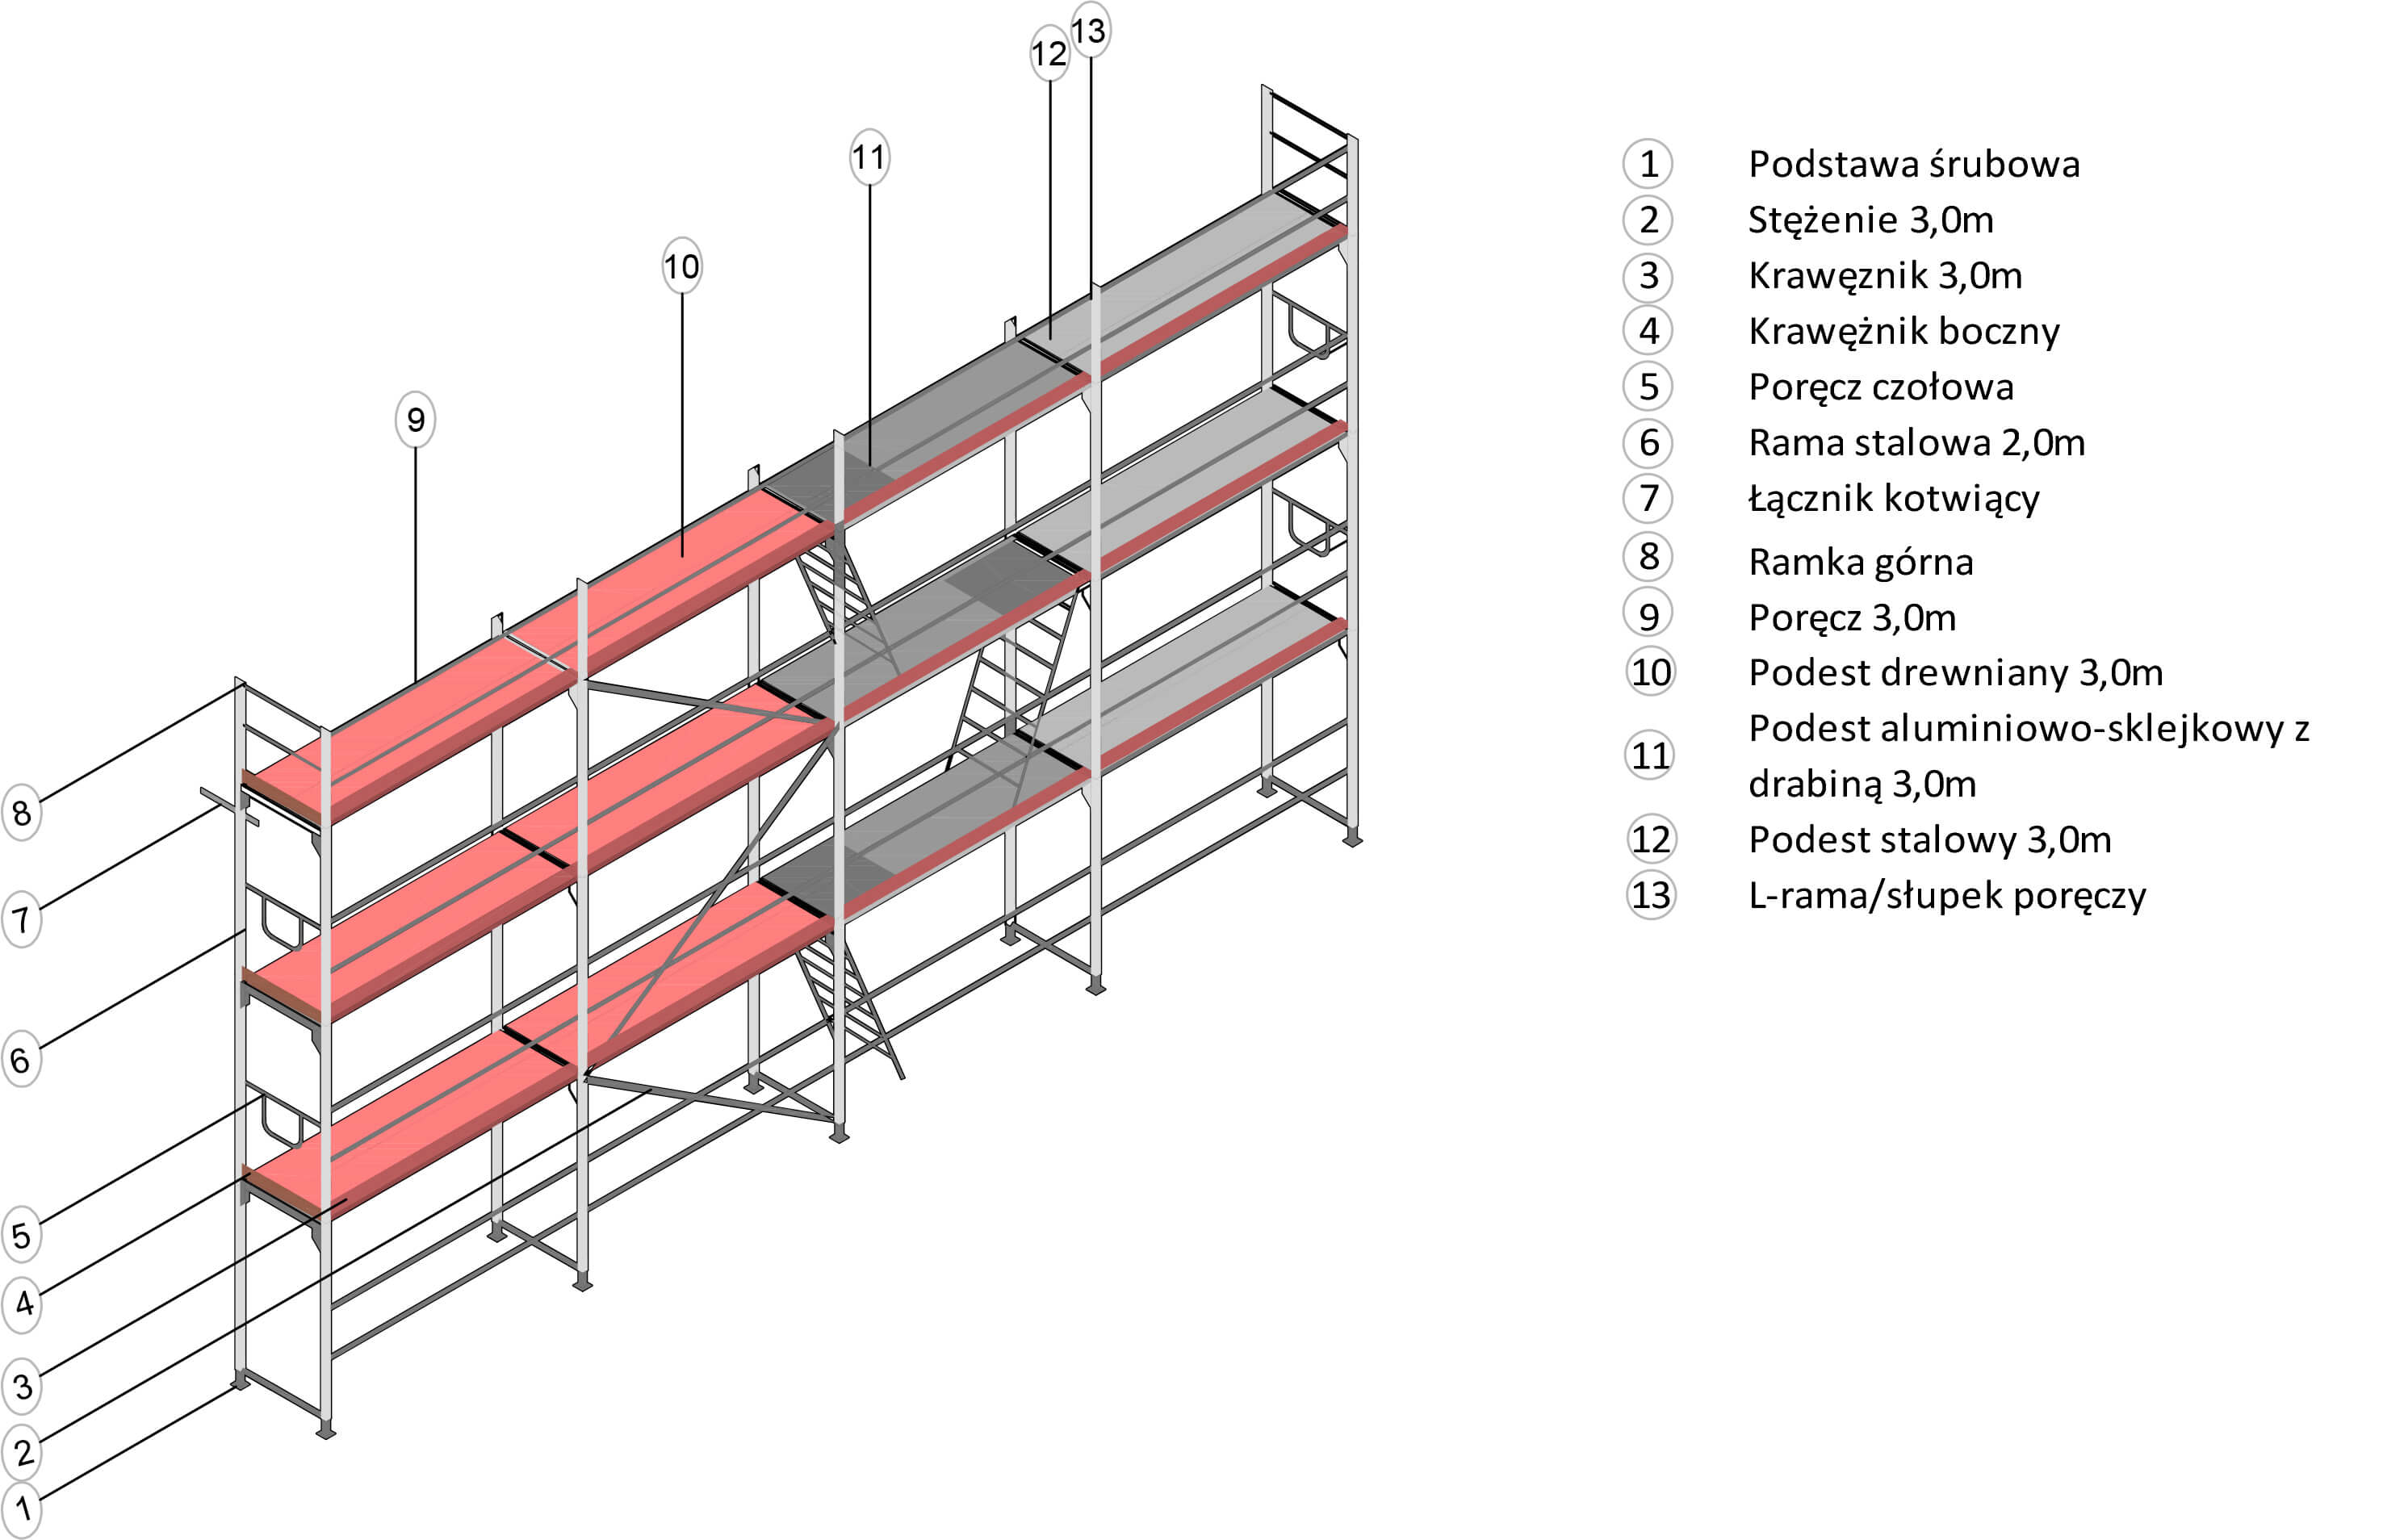 POL-MET rusztowania elewacyjne fasadowe budowlane ramowe modułowe Plettac